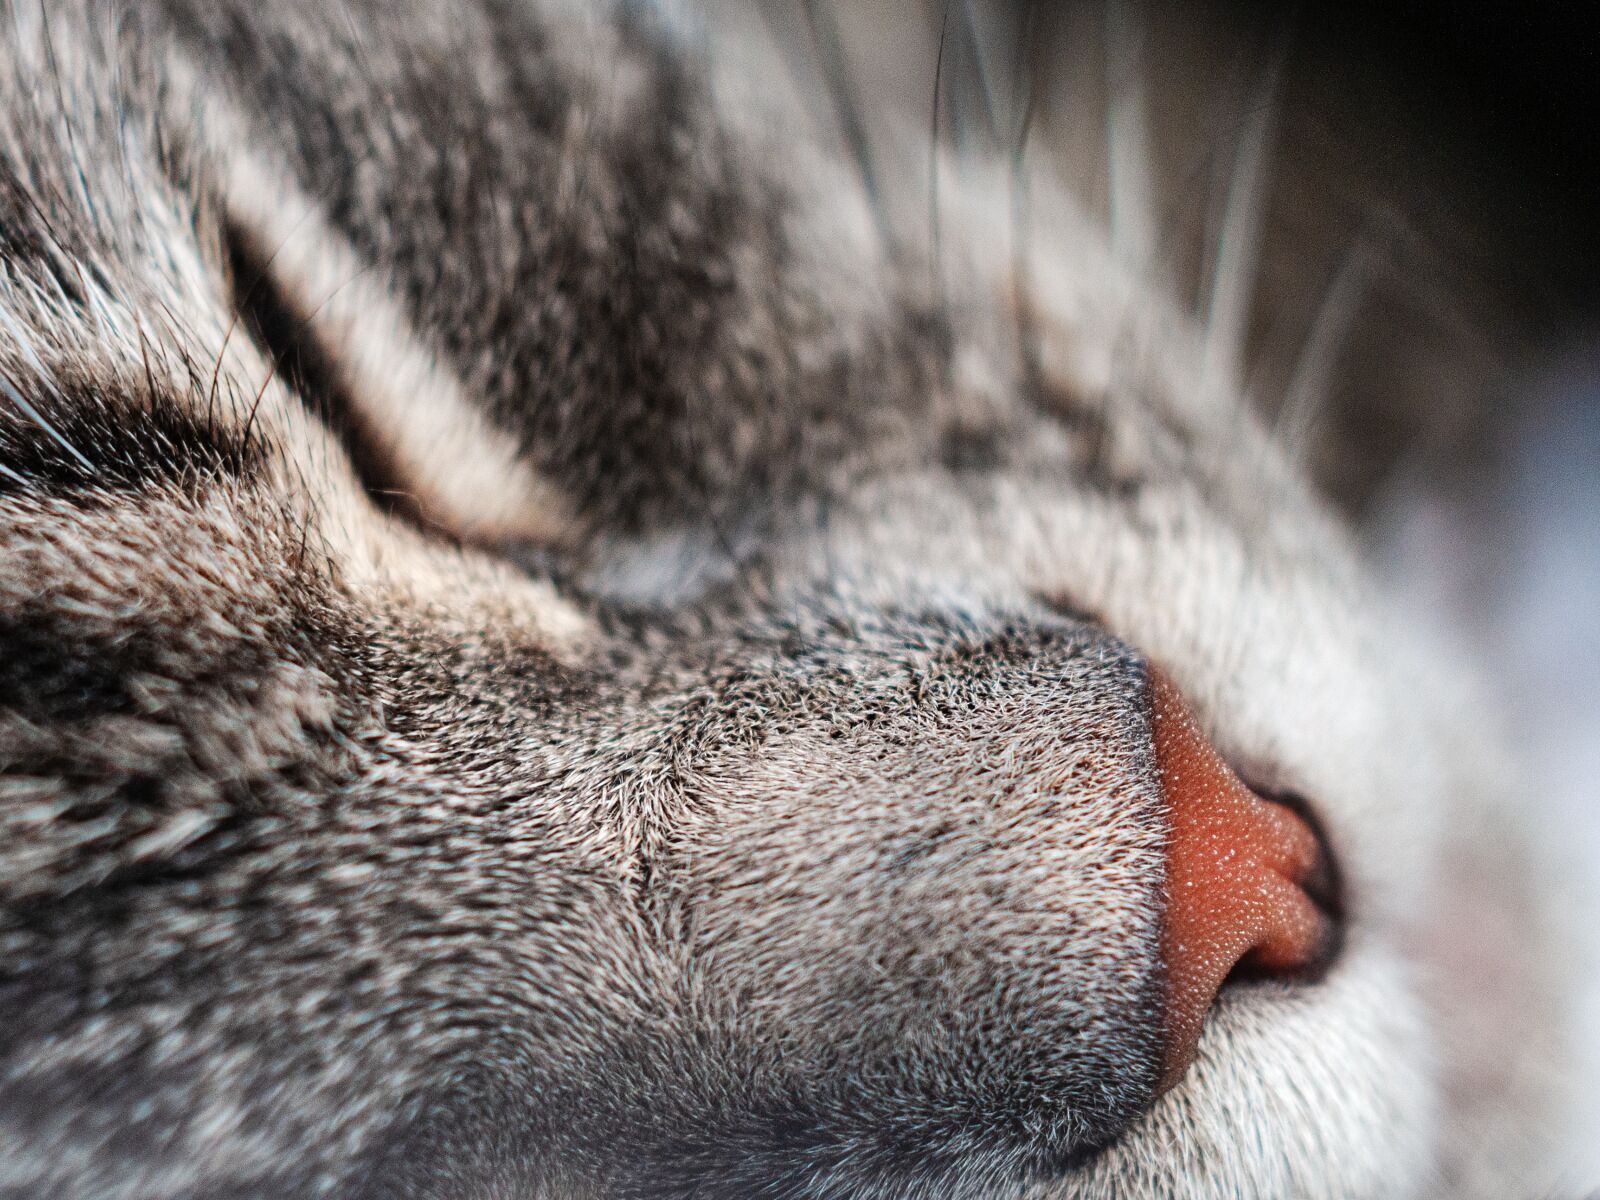 Nikon D300S sample photo. Cat, close up, macro photography